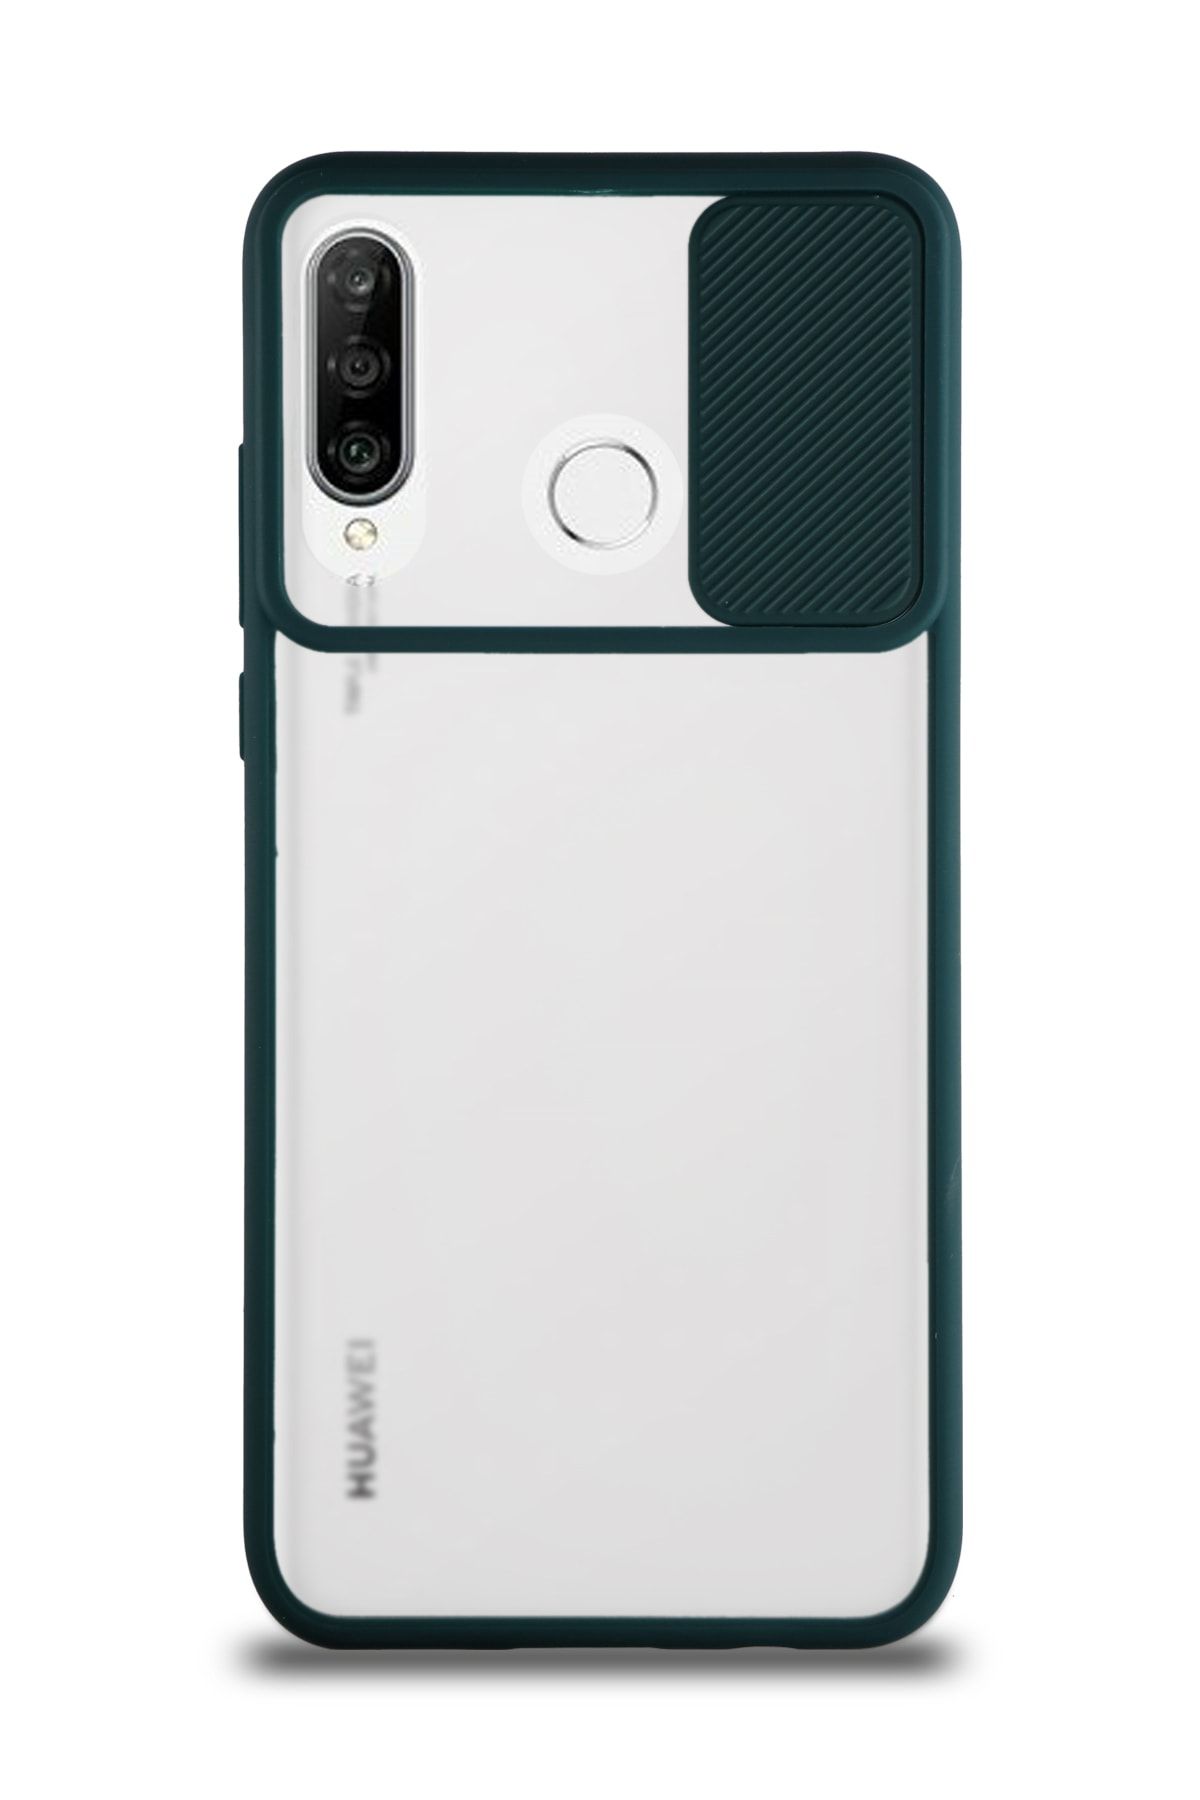 KZY İletişim Huawei P30 Lite Uyumlu Kapak Lensi Açılır Kapanır Kamera Korumalı Silikon Kılıf - Yeşil